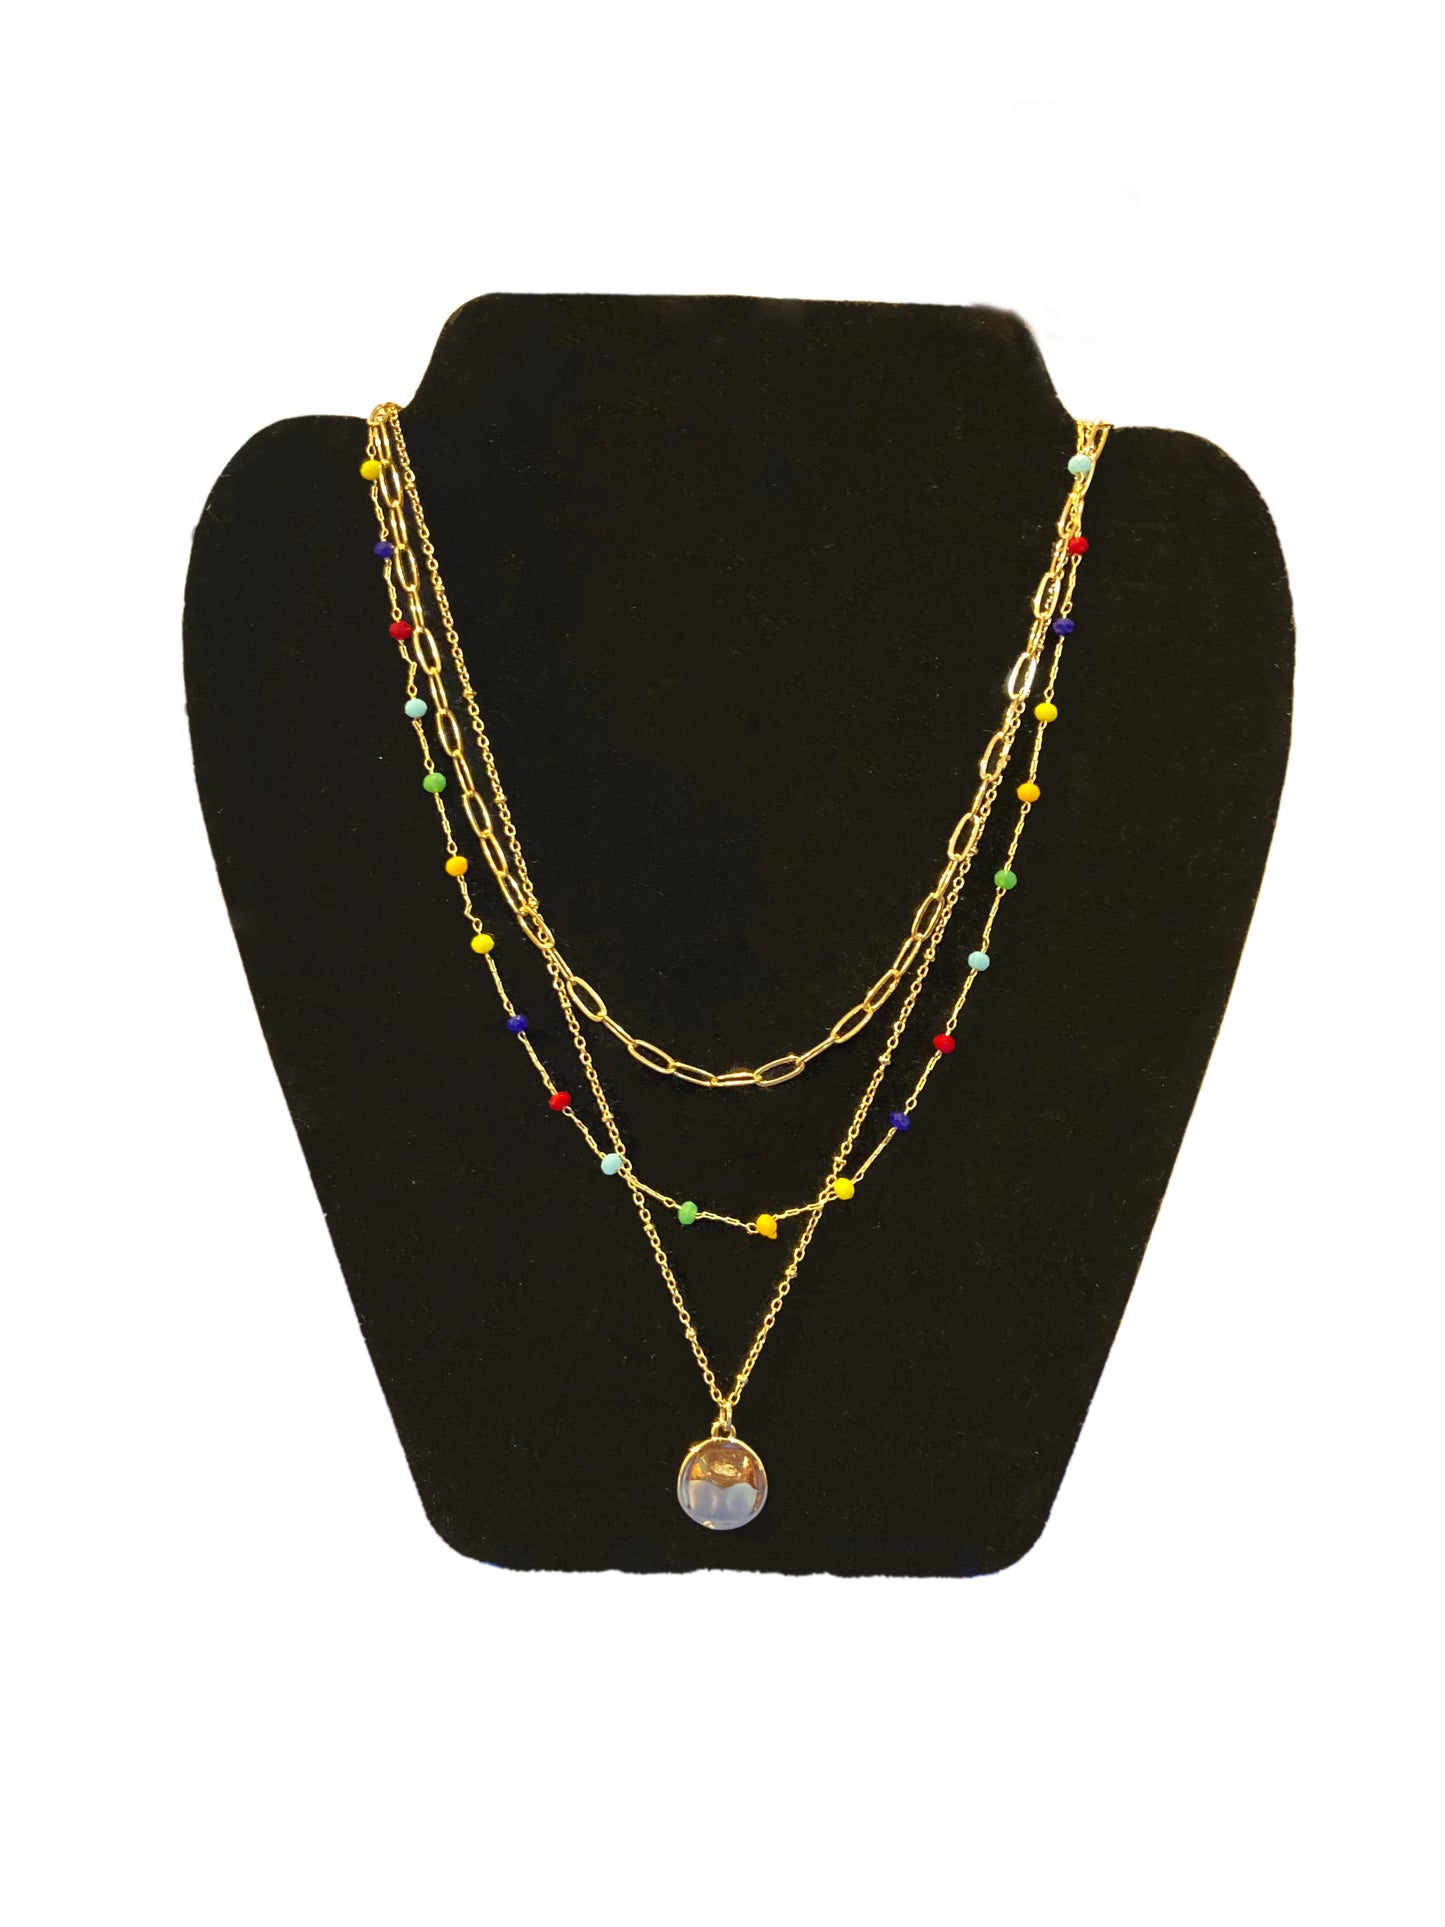 Triple strand multicolored necklace